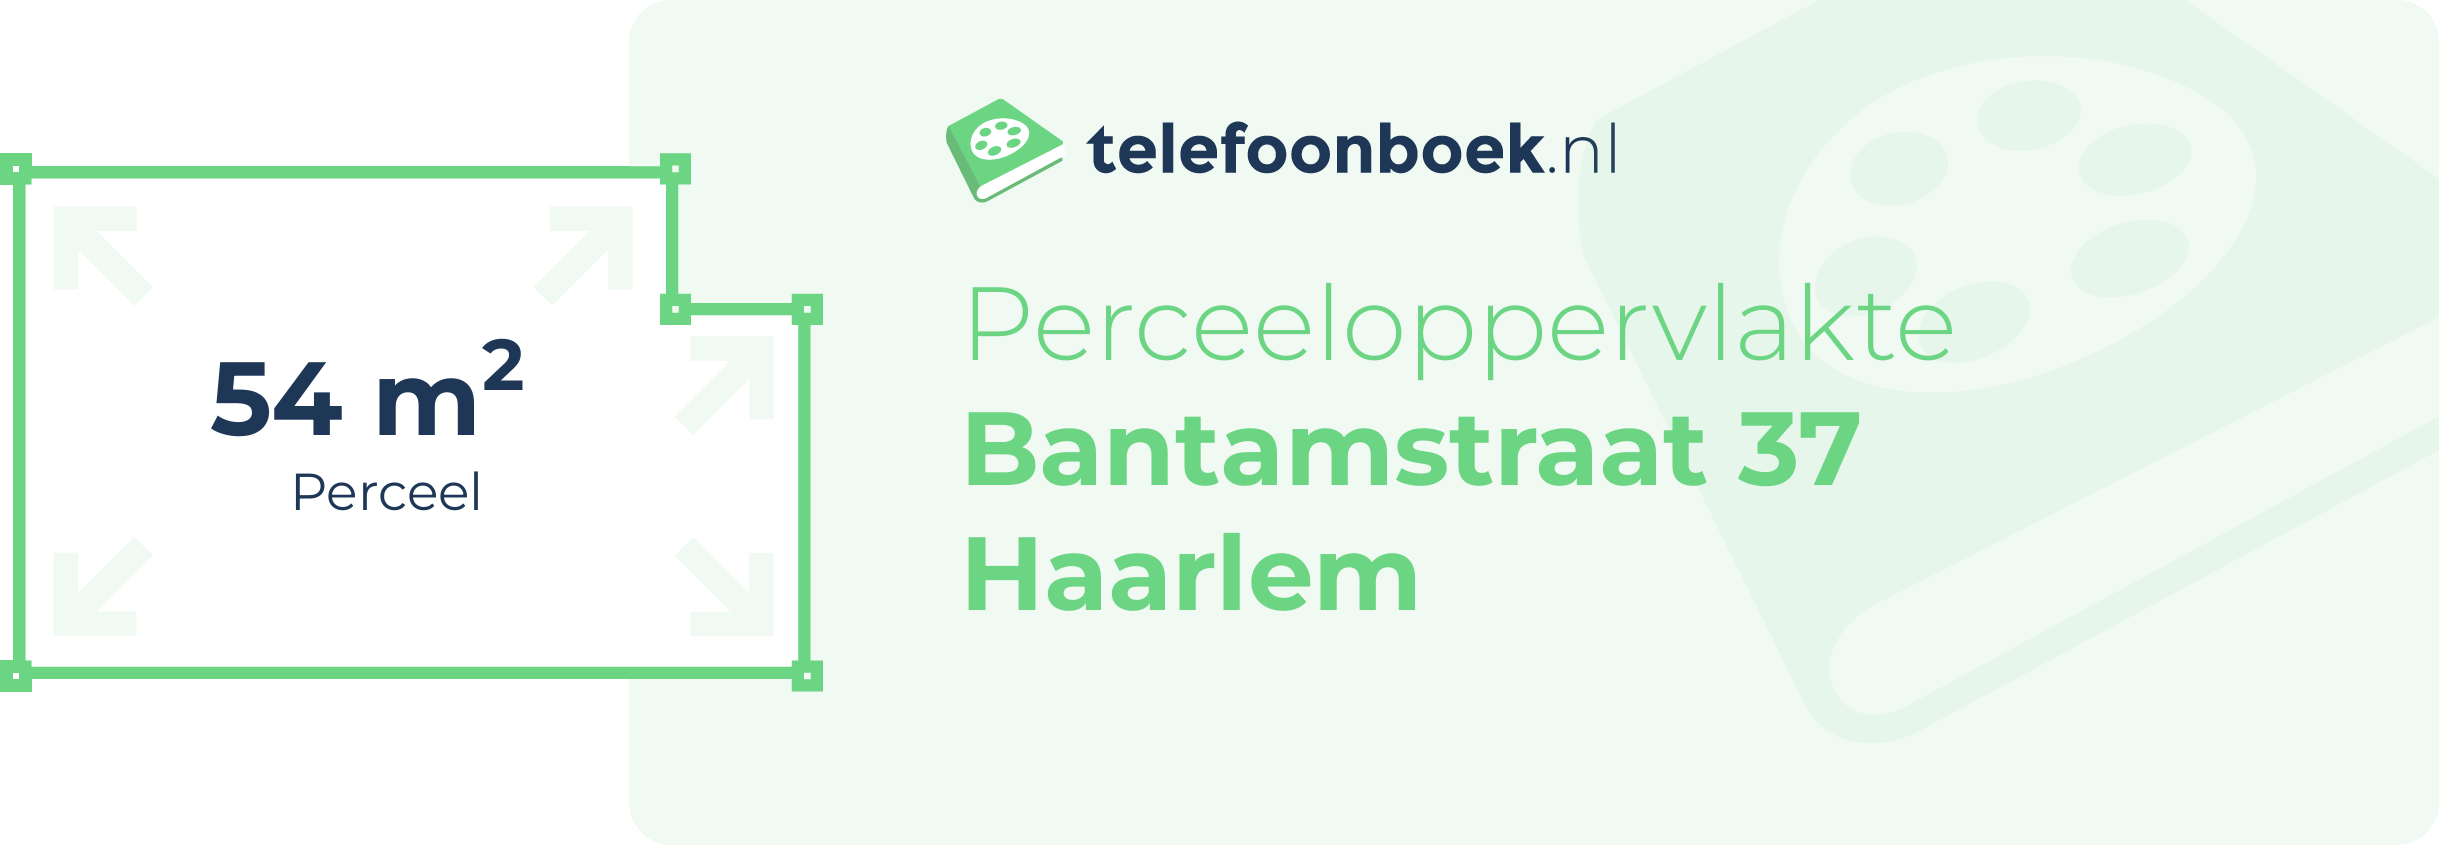 Perceeloppervlakte Bantamstraat 37 Haarlem